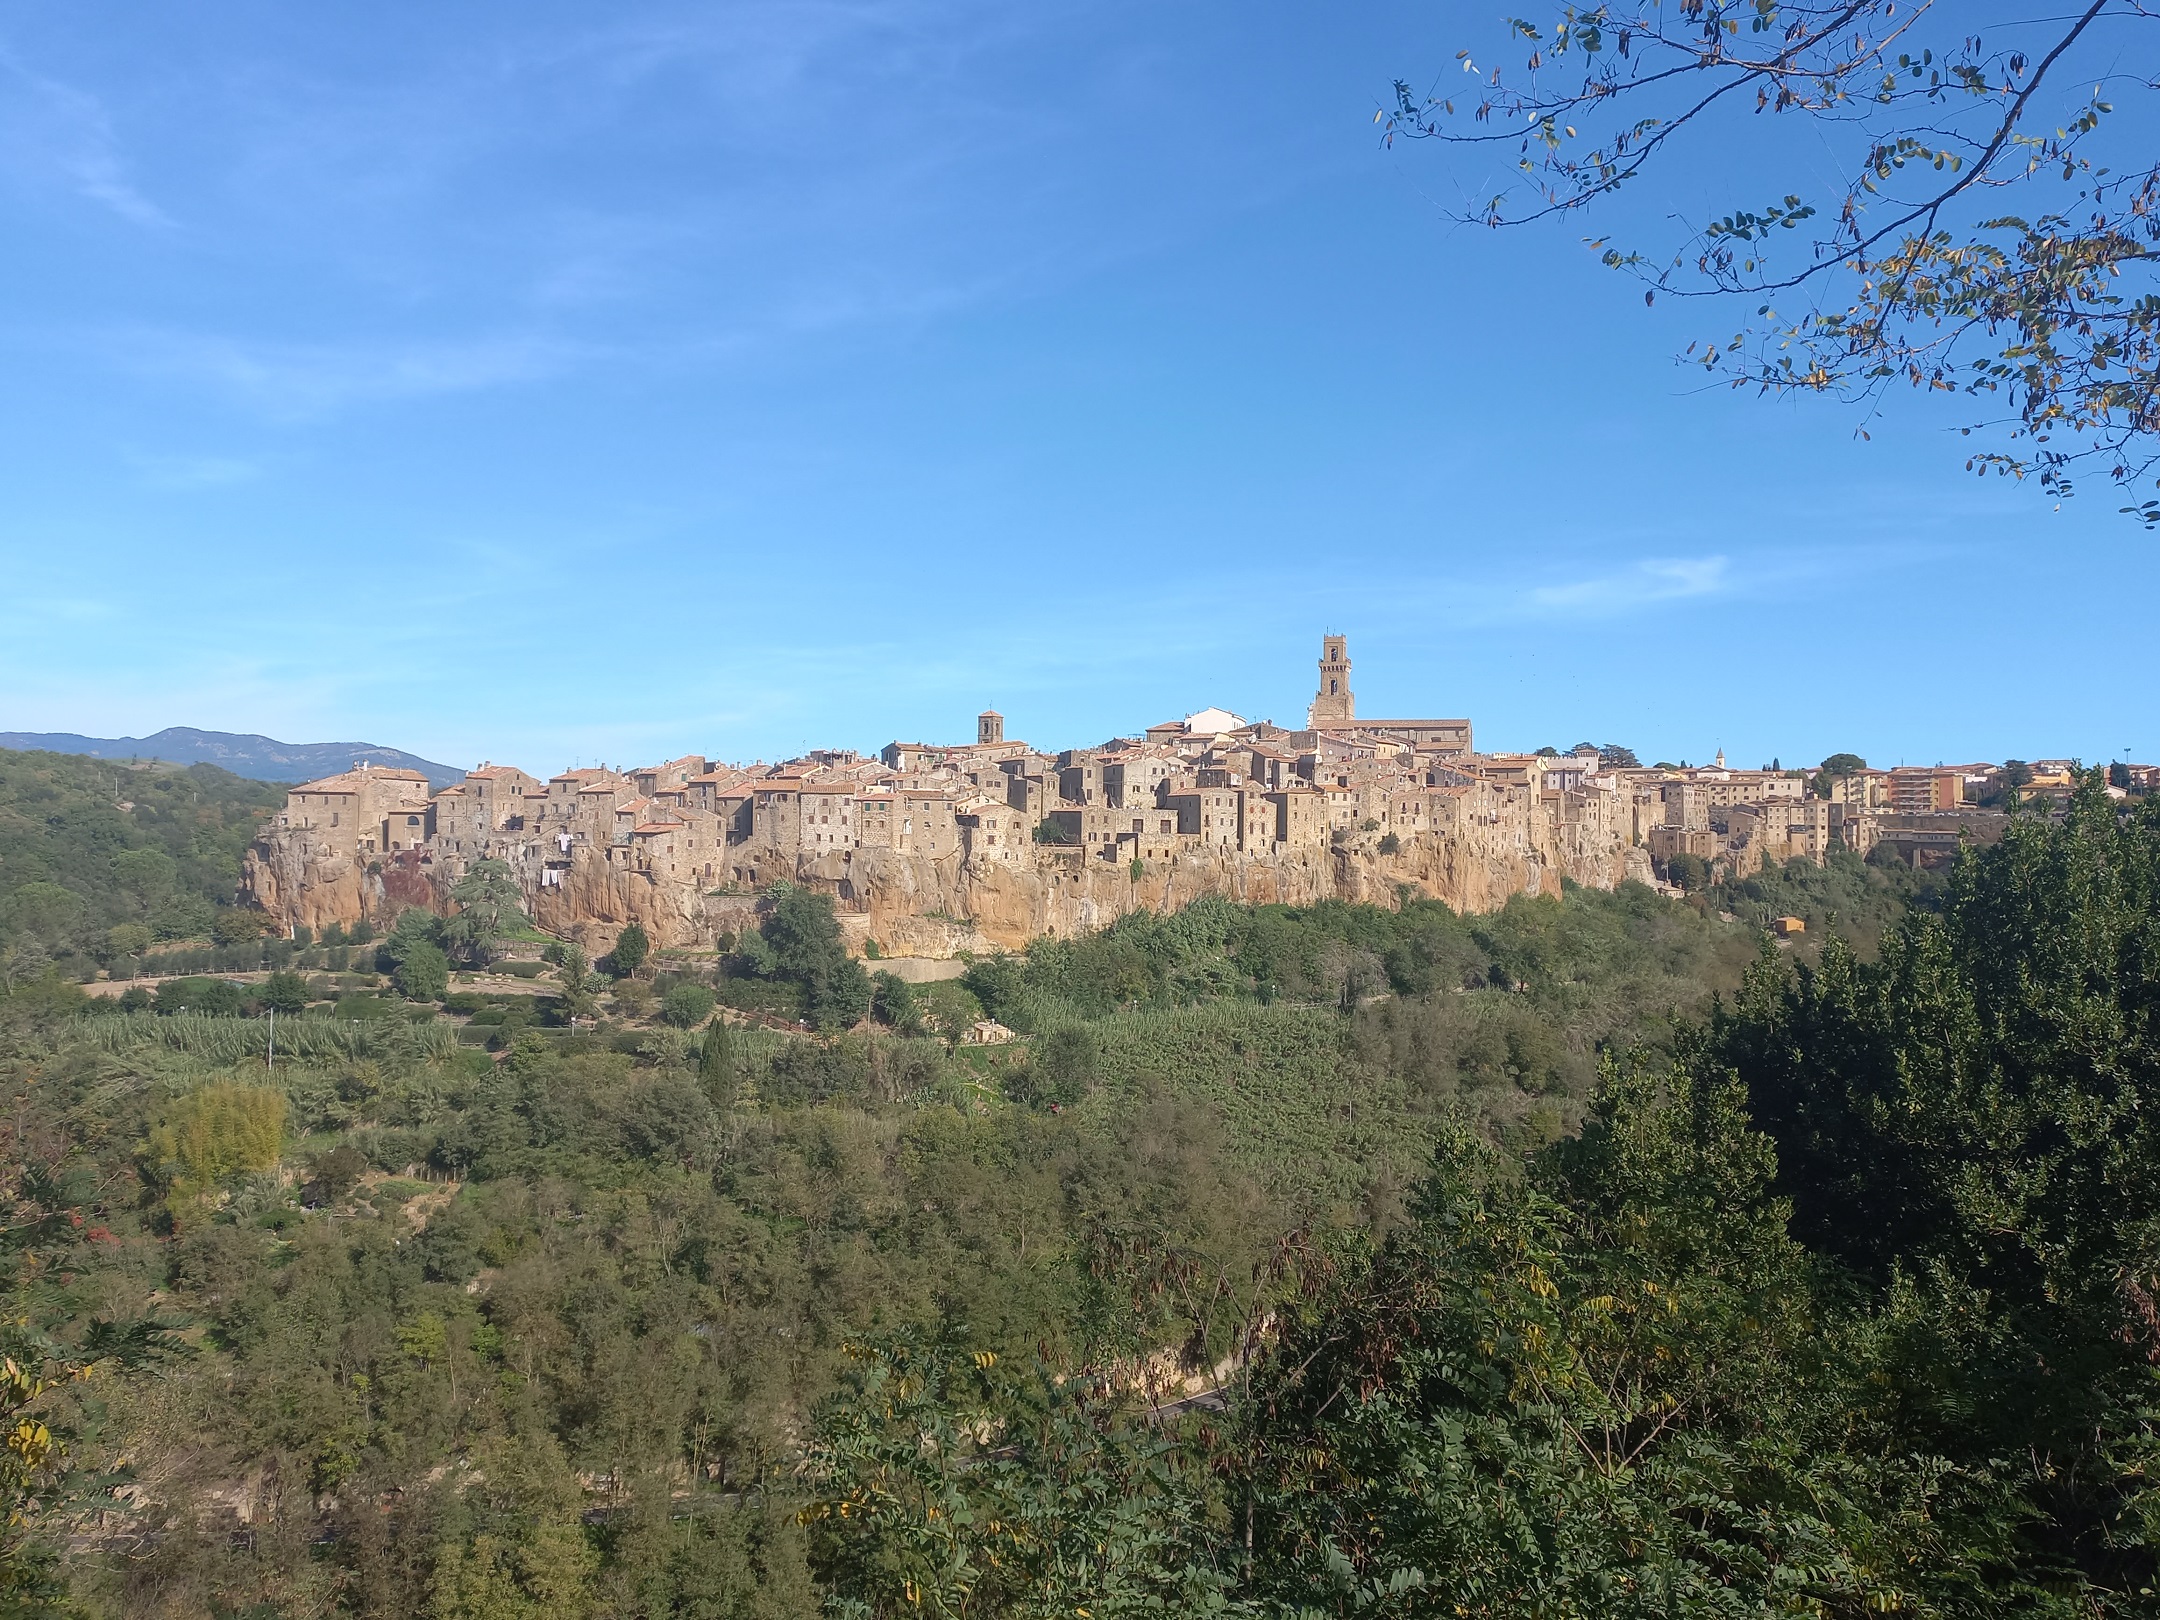 Belvedere, avagy szép kilátás Pitiglianóra